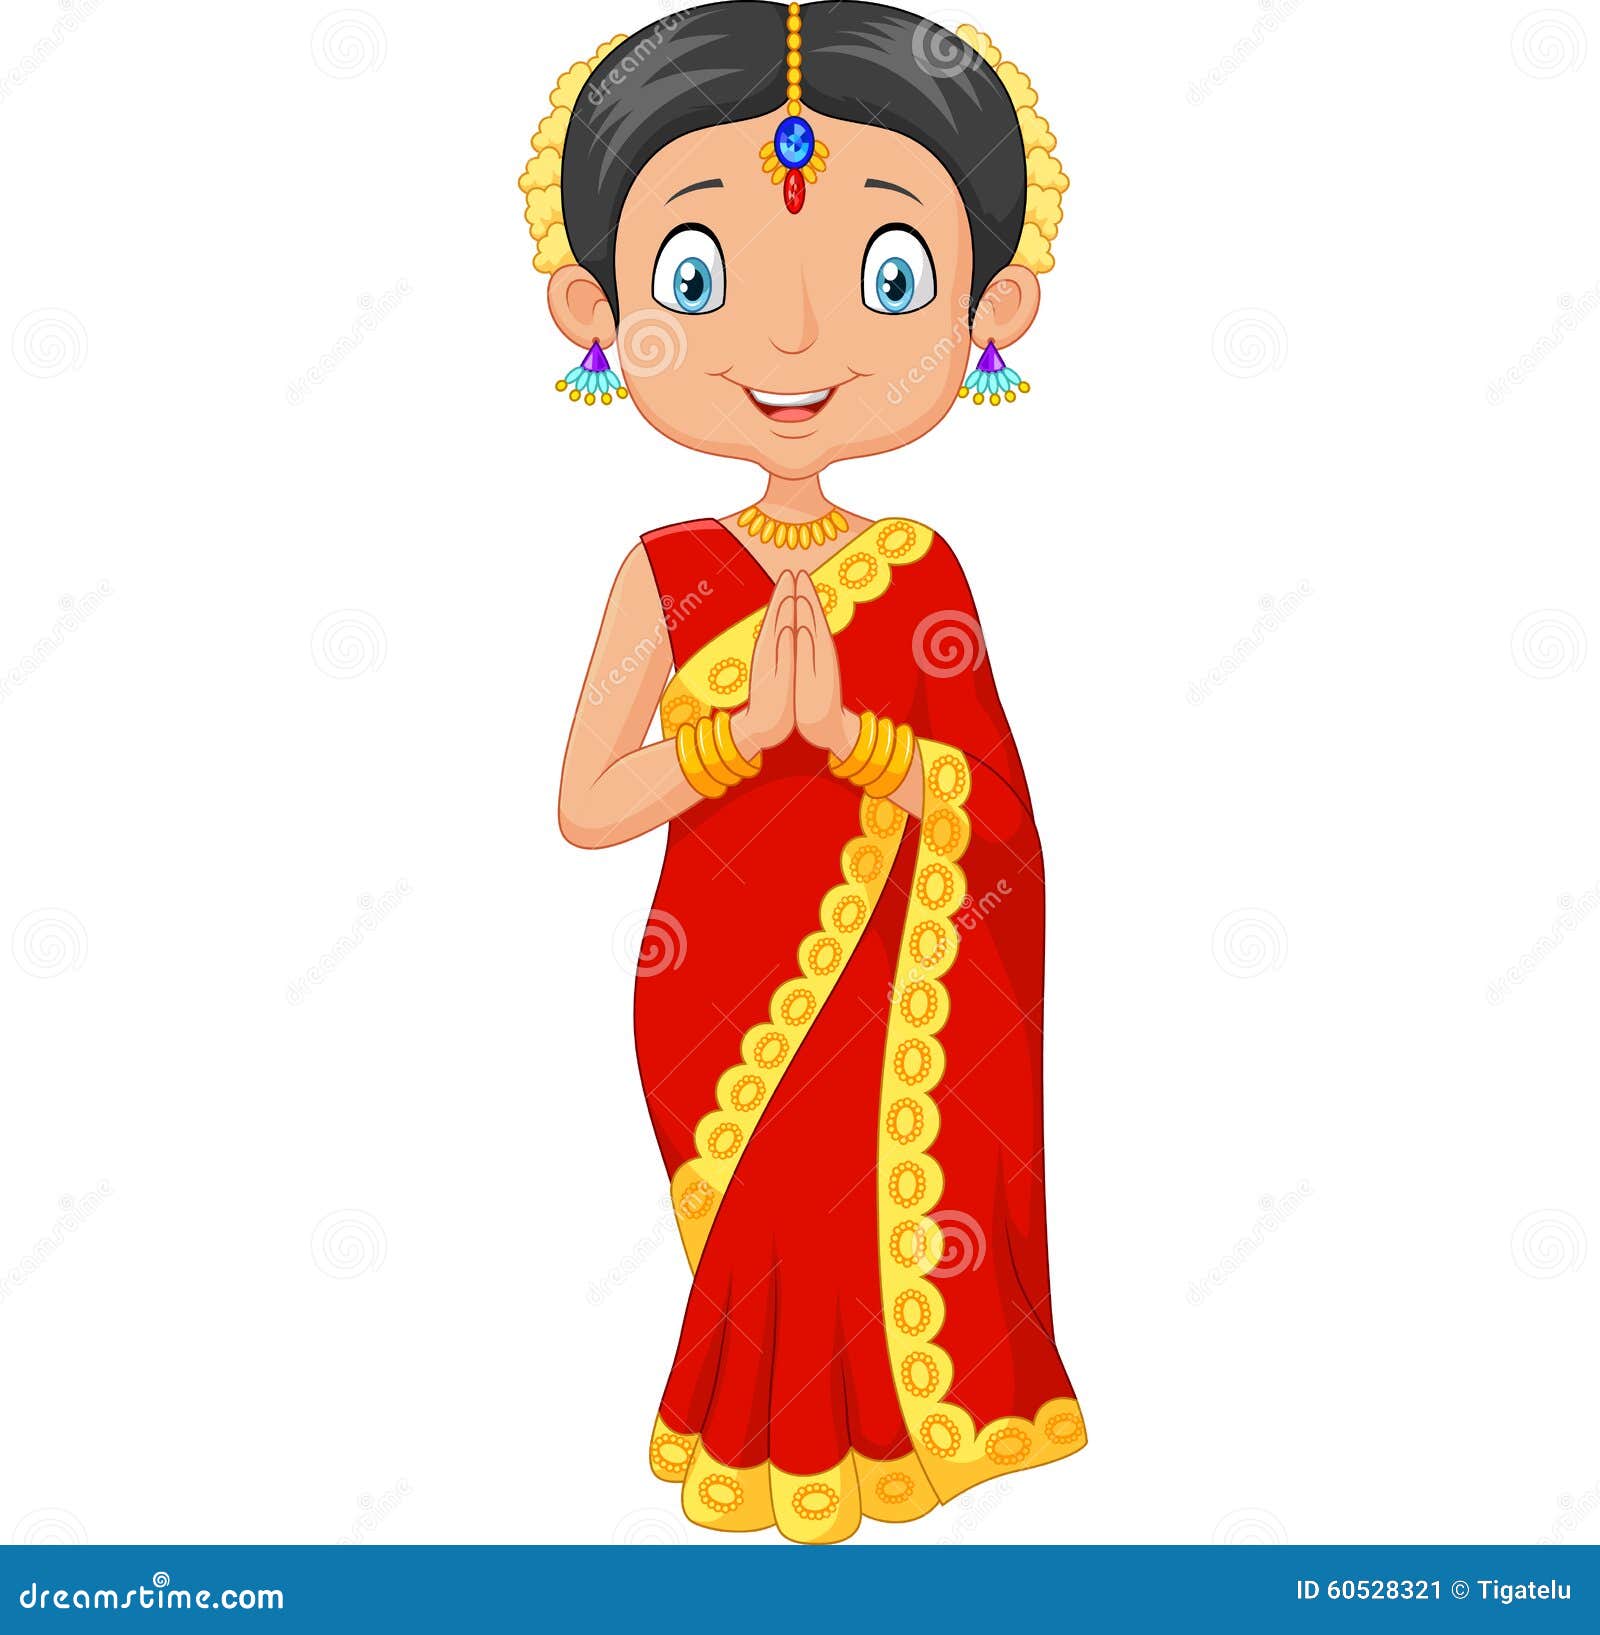 Ethnic Dance Cartoon Indian Girl Stock Illustrations – 286 Ethnic Dance Cartoon  Indian Girl Stock Illustrations, Vectors & Clipart - Dreamstime